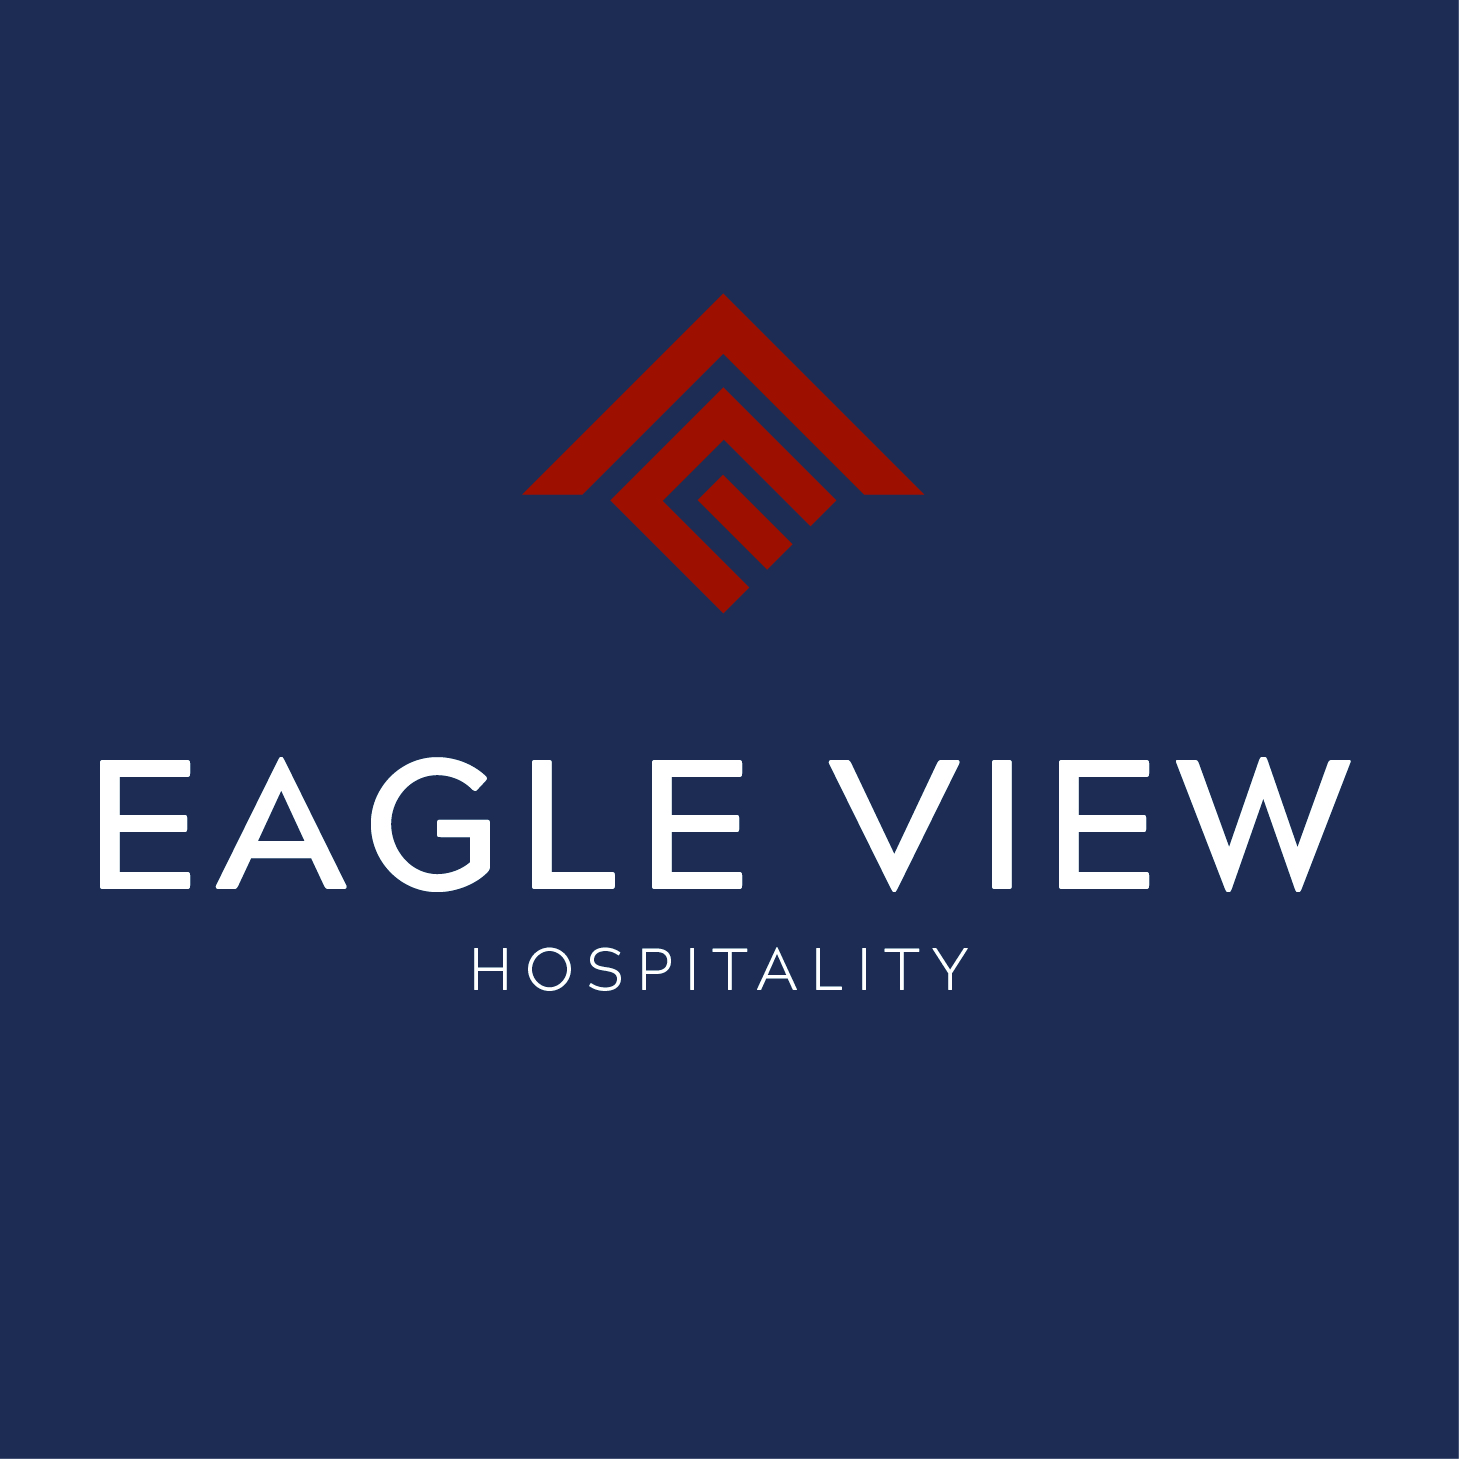 Eagle View Hospitality